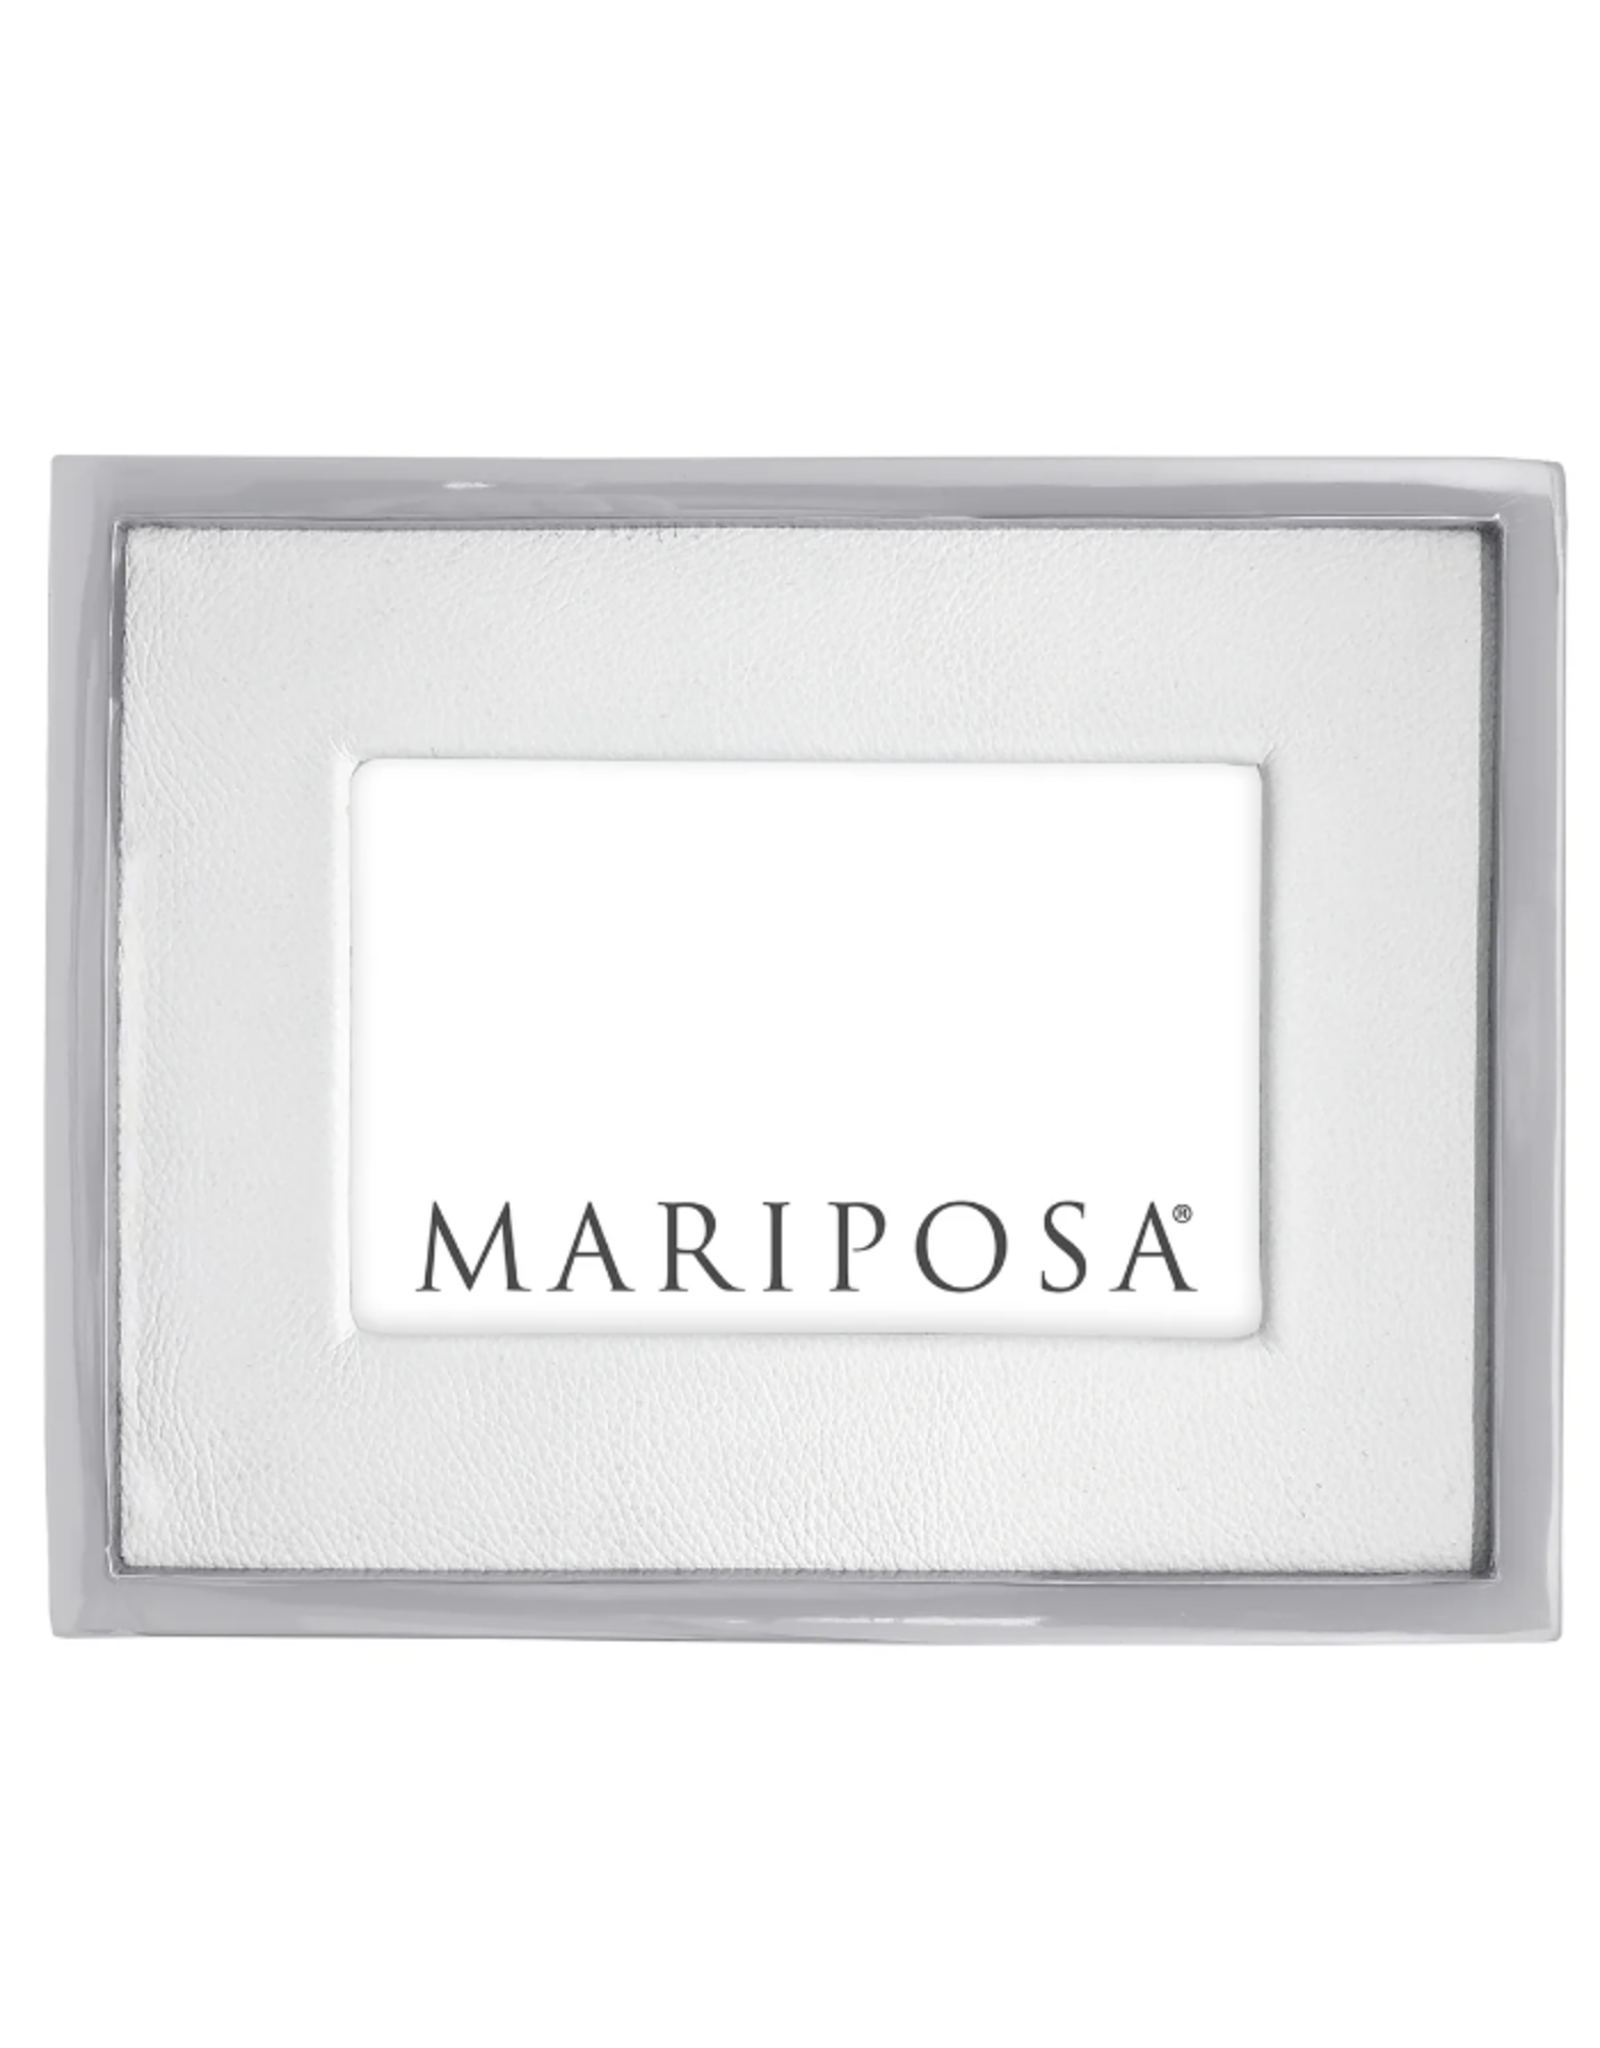 Mariposa White Leather/metel Border Frame 4x6